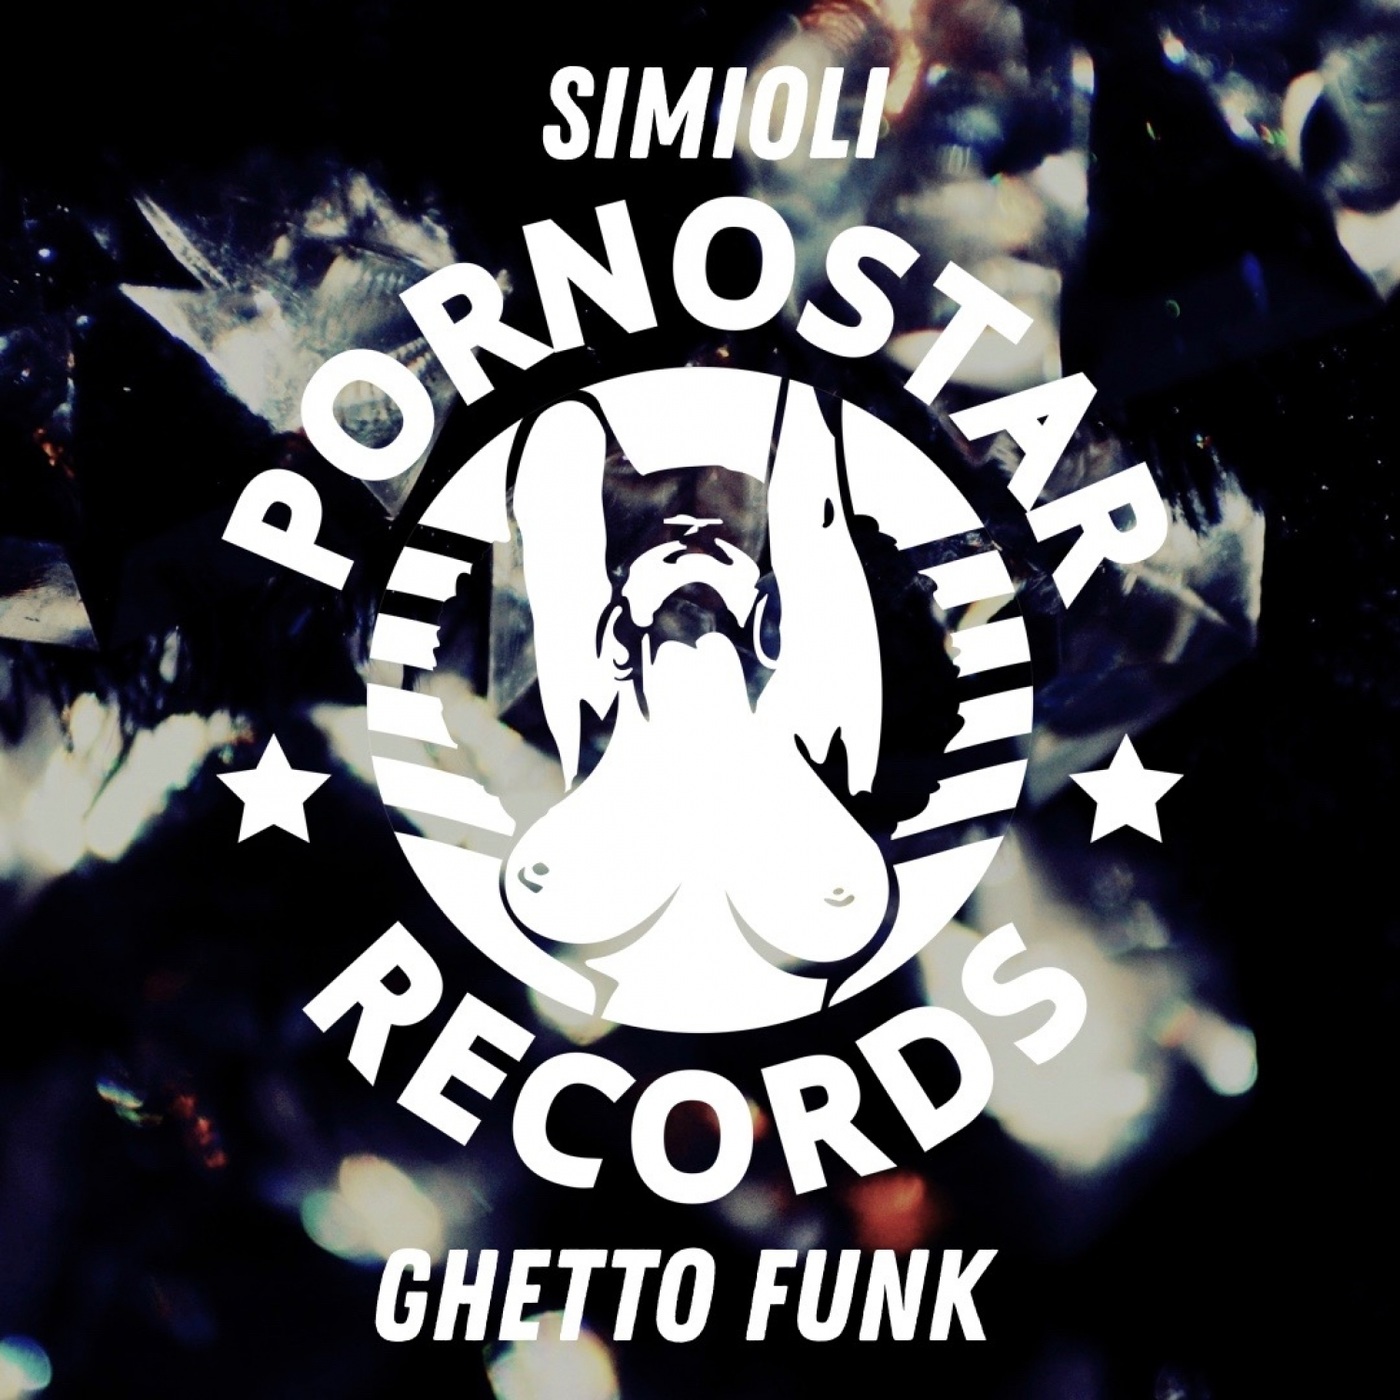 Simioli - Ghetto Funk / PornoStar Records